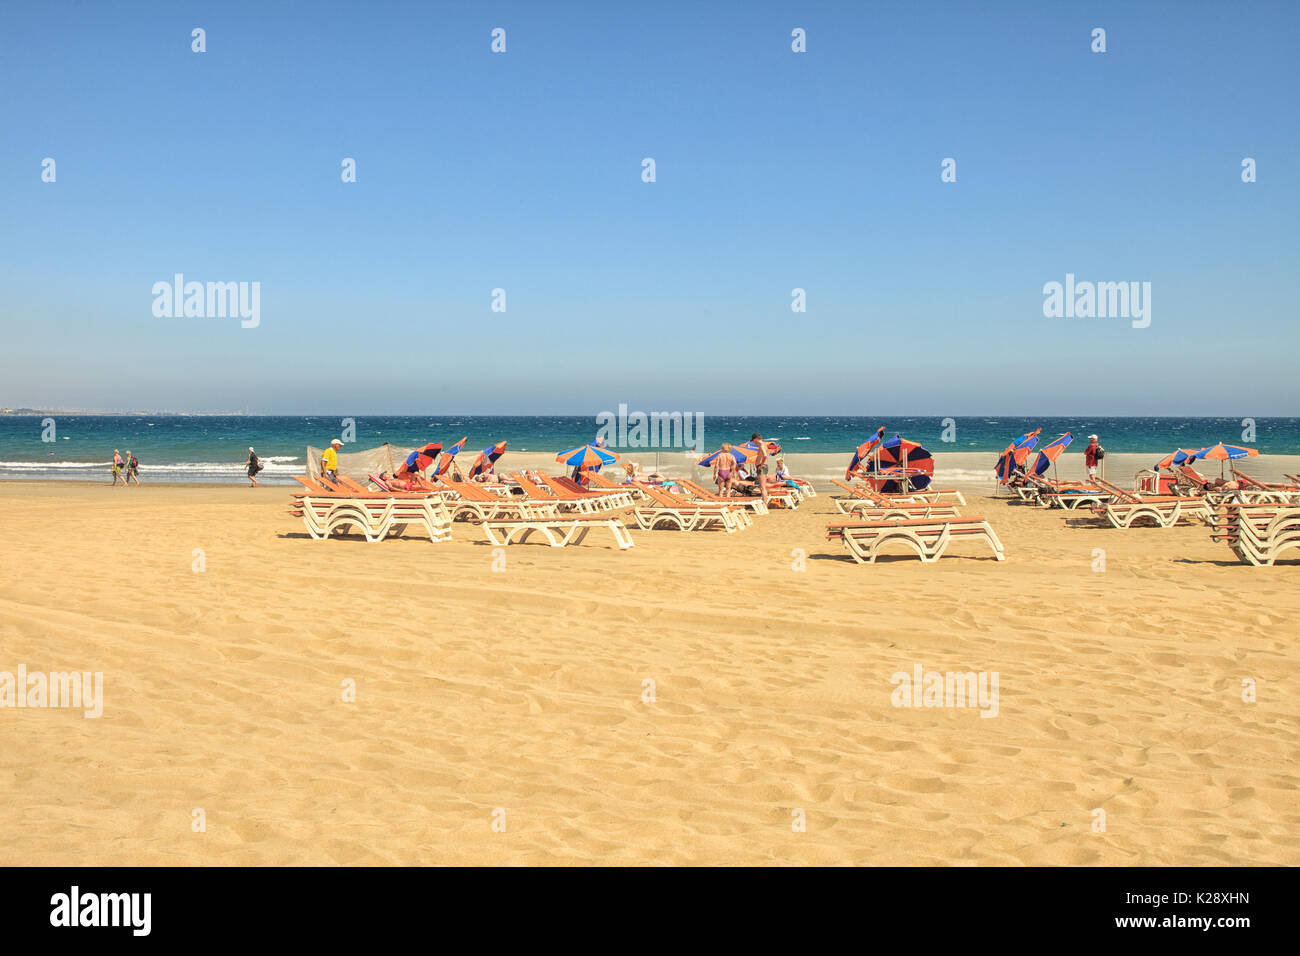 PLAYA DEL INGLES, GRAN CANARIA - 3. März: die Leute am Strand und in der Sonne am Playa del Ingles auf Gran Canaria am 3. März 2012. Playa Ingles ist der p Stockfoto